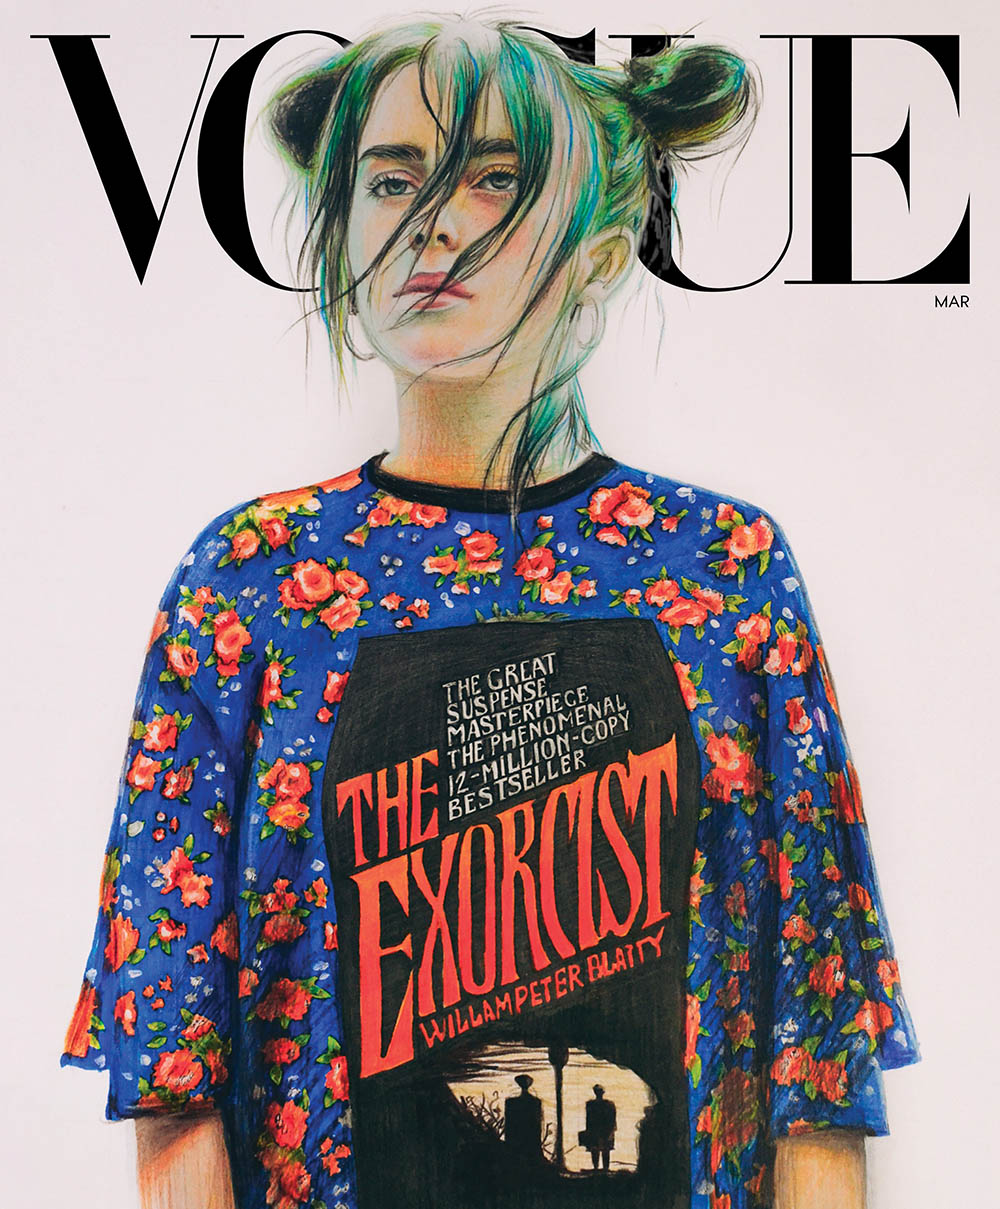 Billie Eilish covers Vogue US March 2020